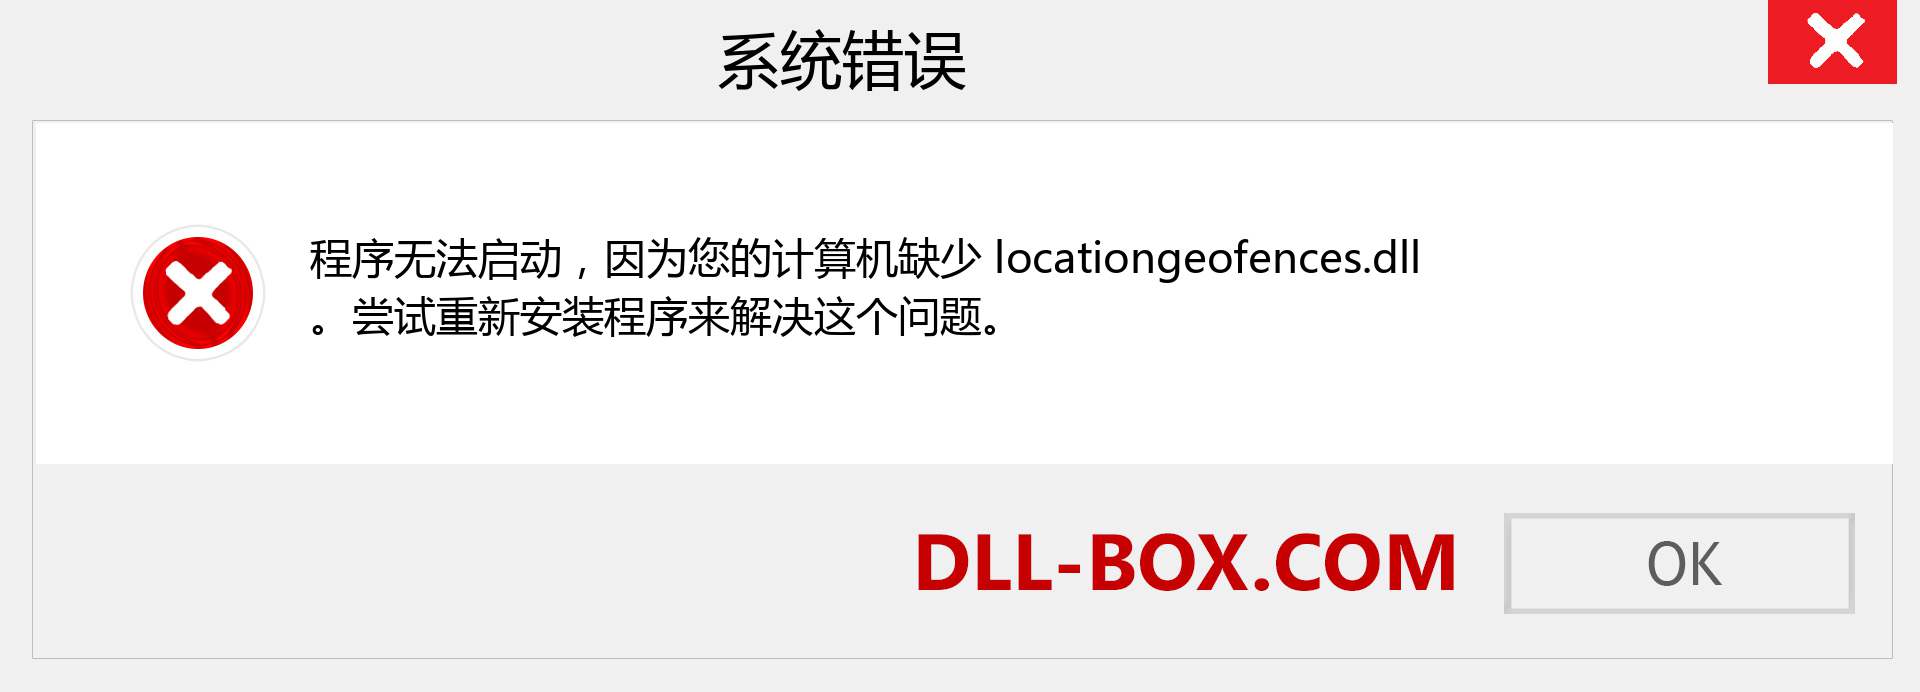 locationgeofences.dll 文件丢失？。 适用于 Windows 7、8、10 的下载 - 修复 Windows、照片、图像上的 locationgeofences dll 丢失错误